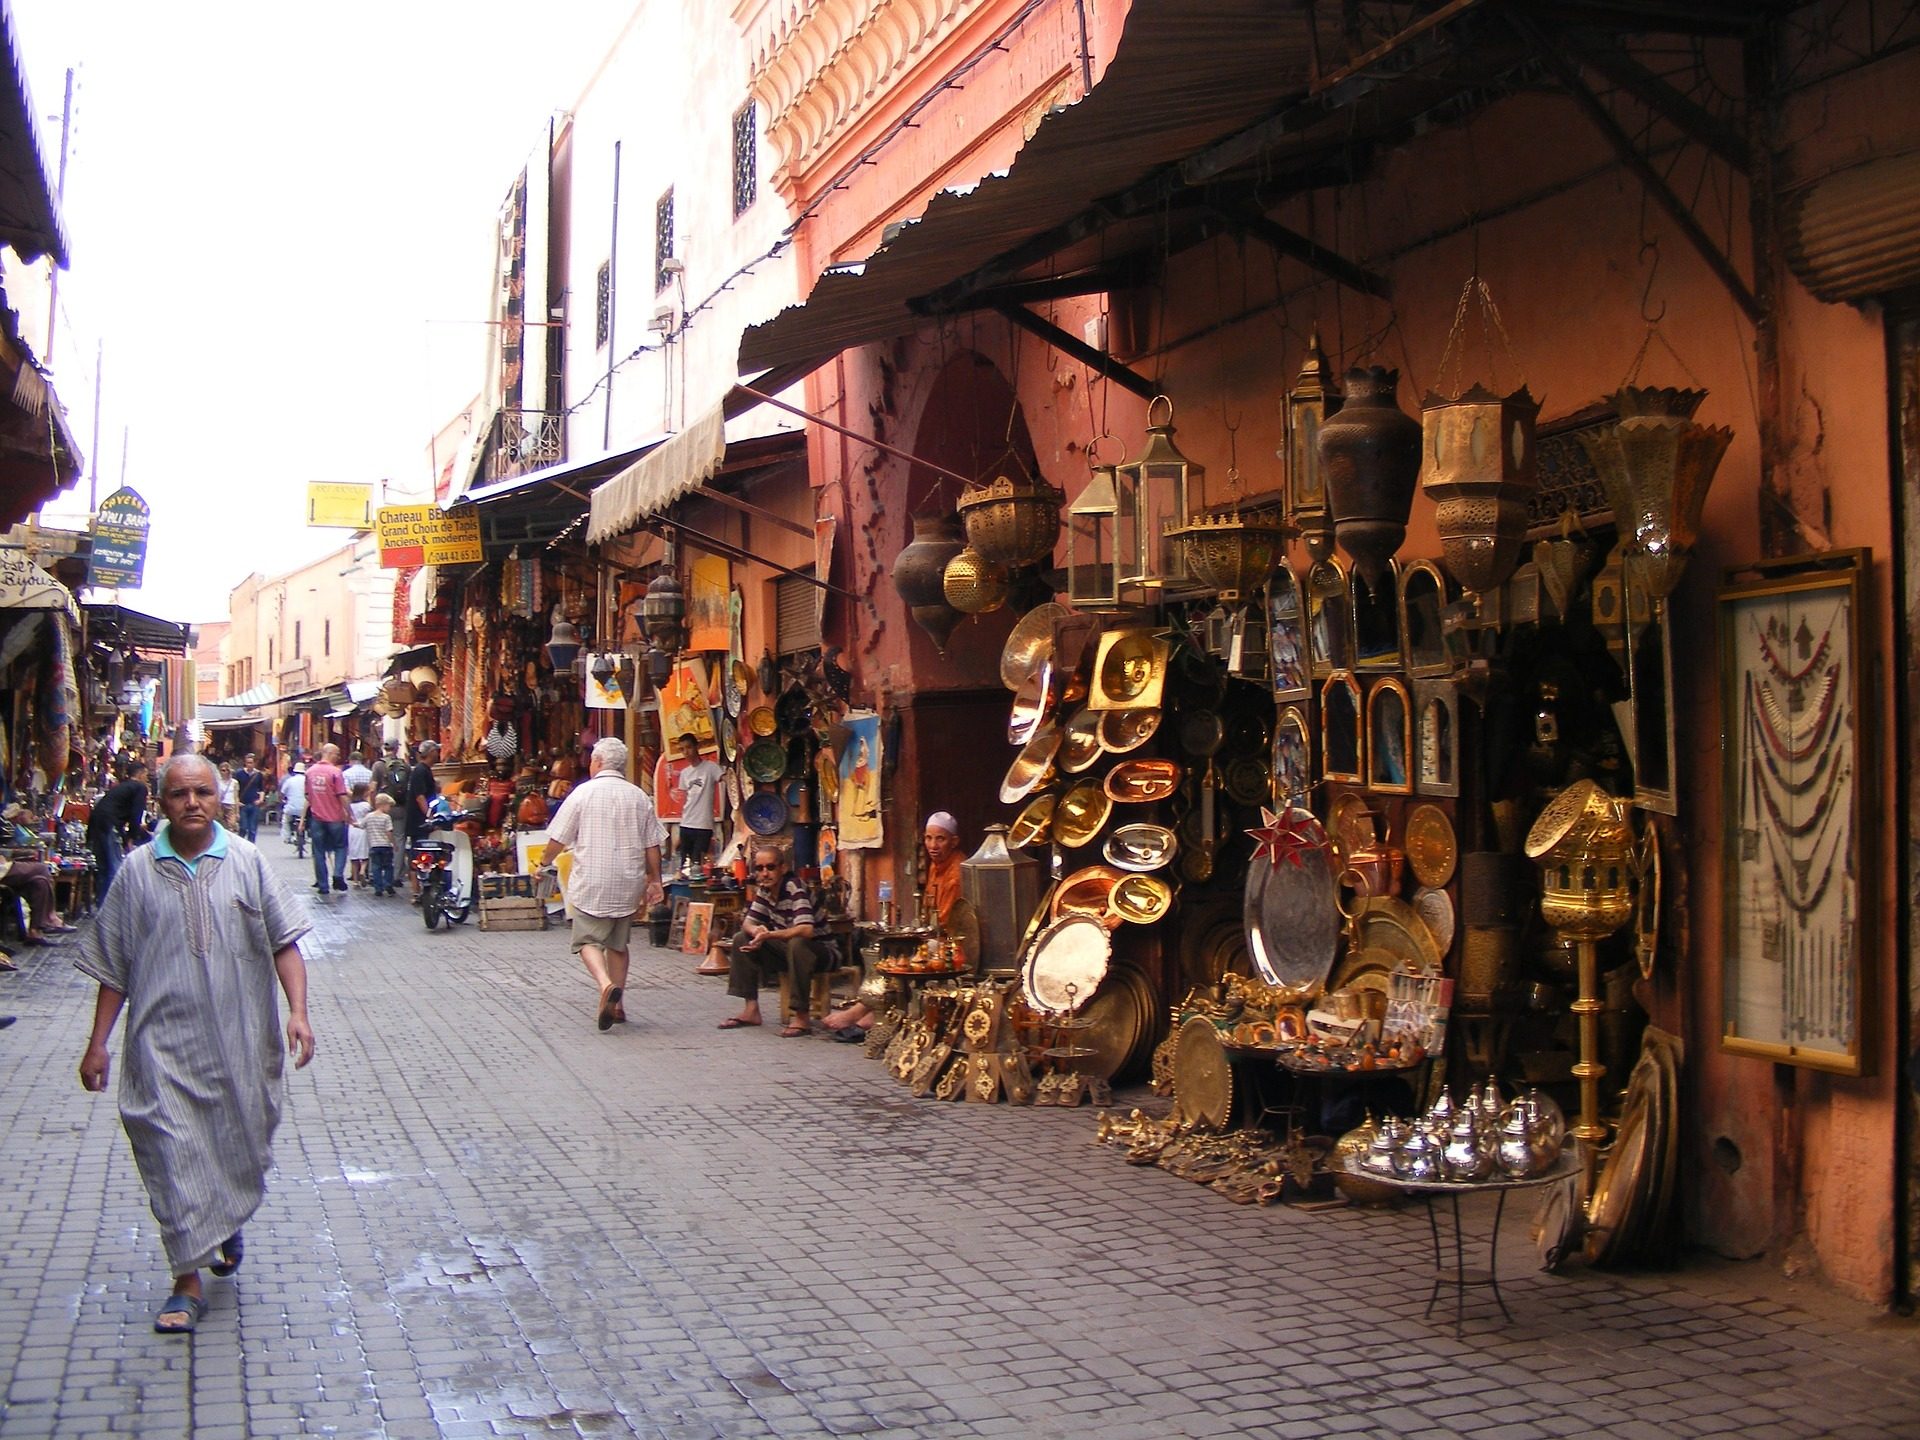 Kurzurlaub in Marokko Marrakesch 4 Nächte ab 103,25€ pro Person